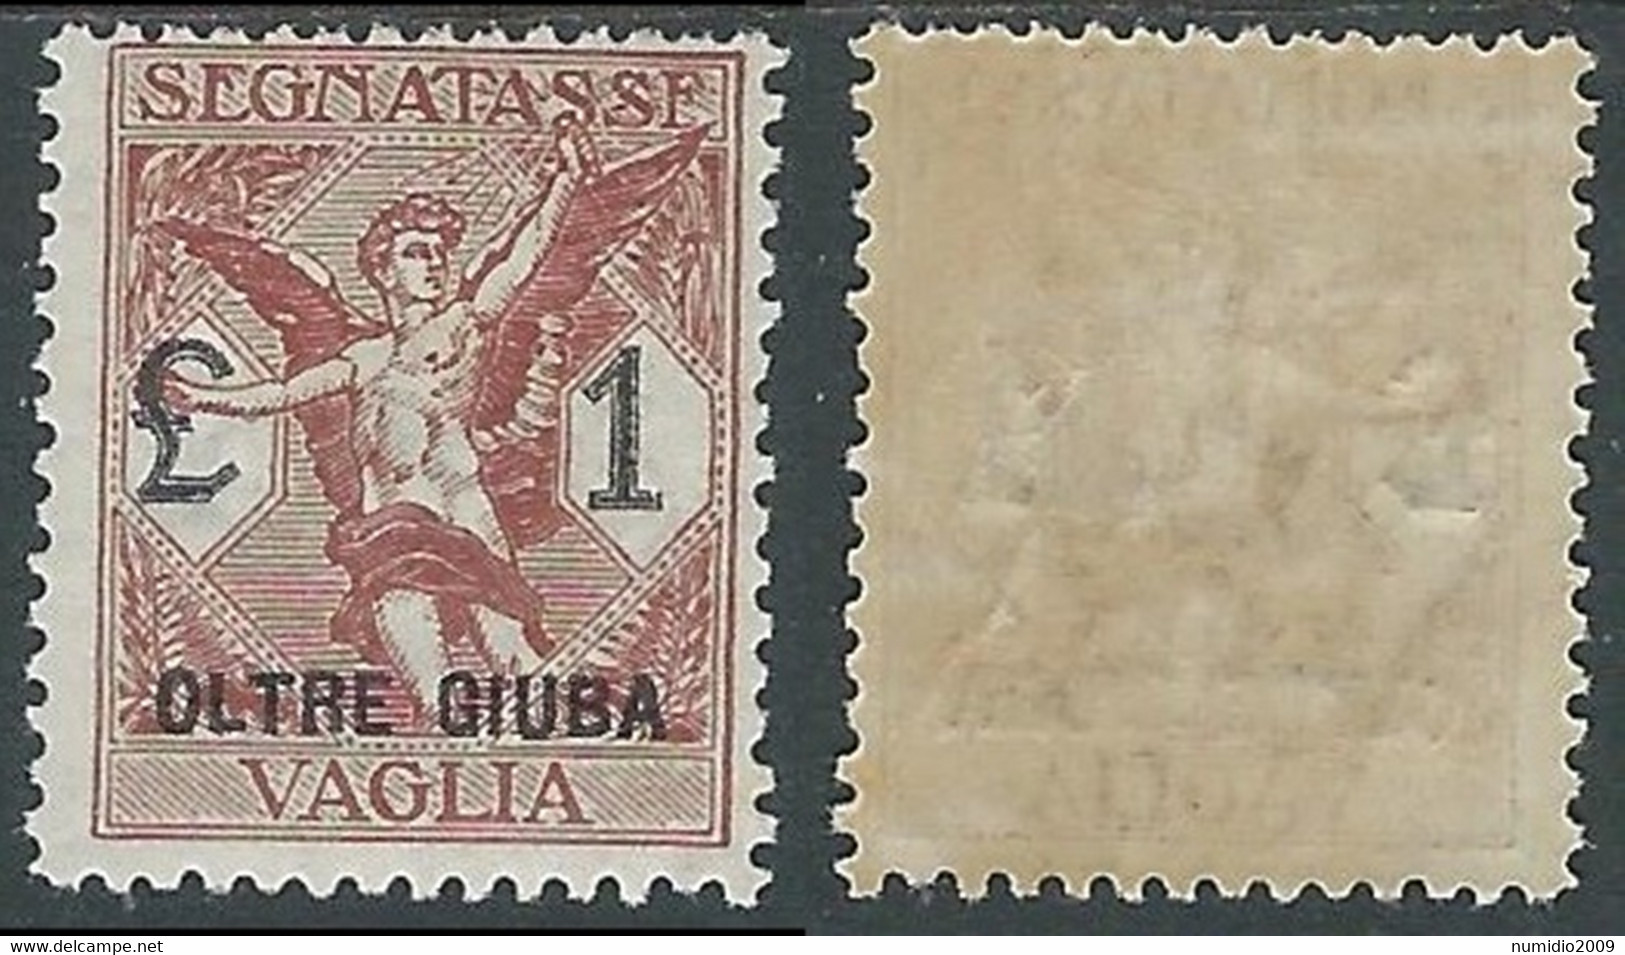 1925 OLTRE GIUBA SEGNATASSE PER VAGLIA 1 LIRA MH * - E201 - Oltre Giuba